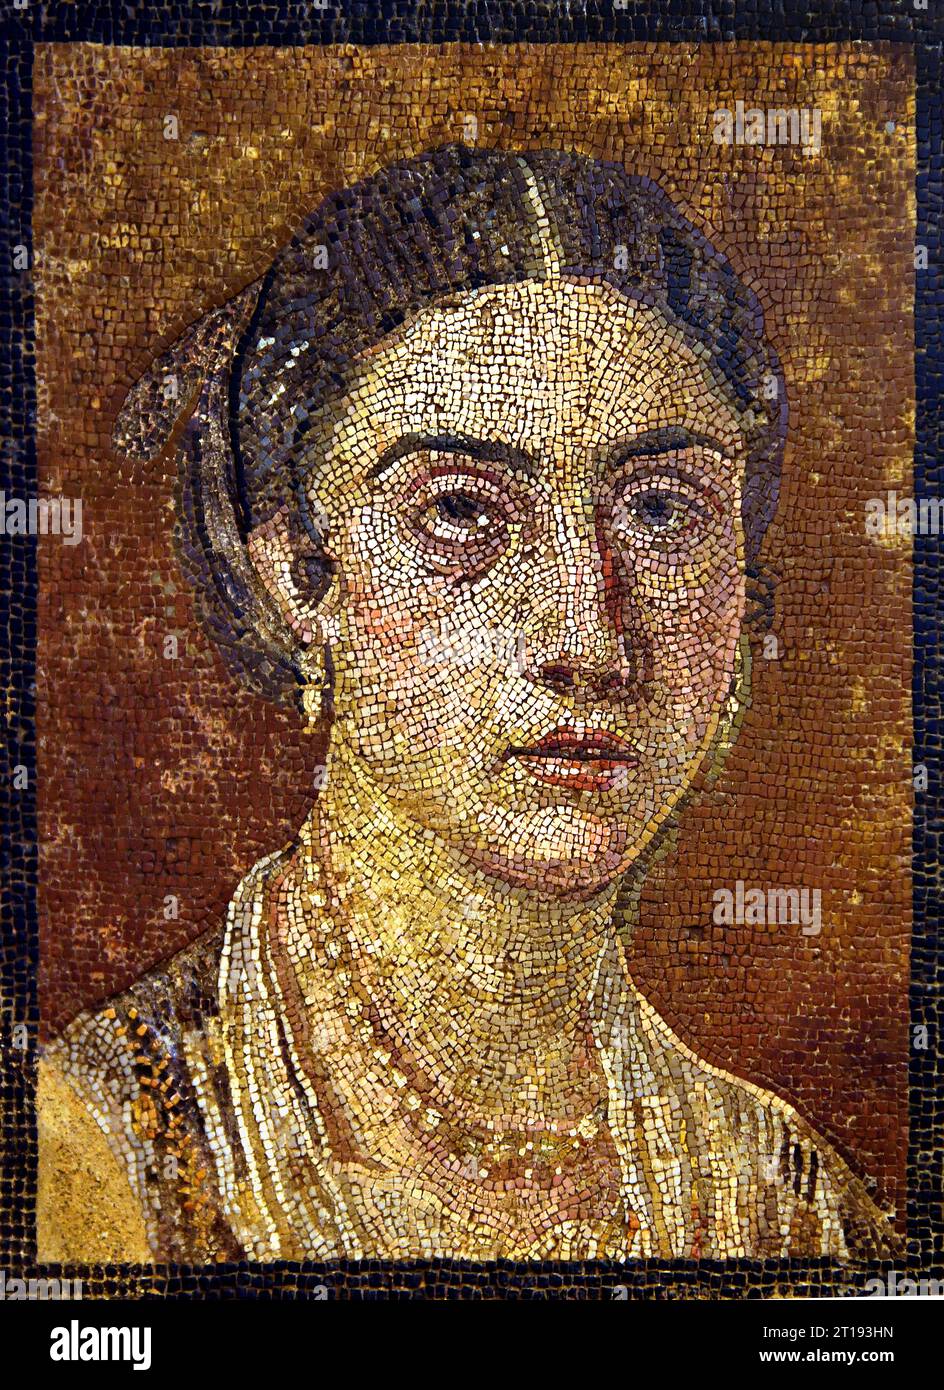 Il mosaico a pavimento raffigurante un ritratto femminile della città romana di Pompei si trova vicino a Napoli, nella regione Campania d'Italia. Pompei fu sepolta sotto 4-6 m di cenere vulcanica e pomice nell'eruzione del Vesuvio nel 79 d.C. Italia, Museo, Napoli, Foto Stock